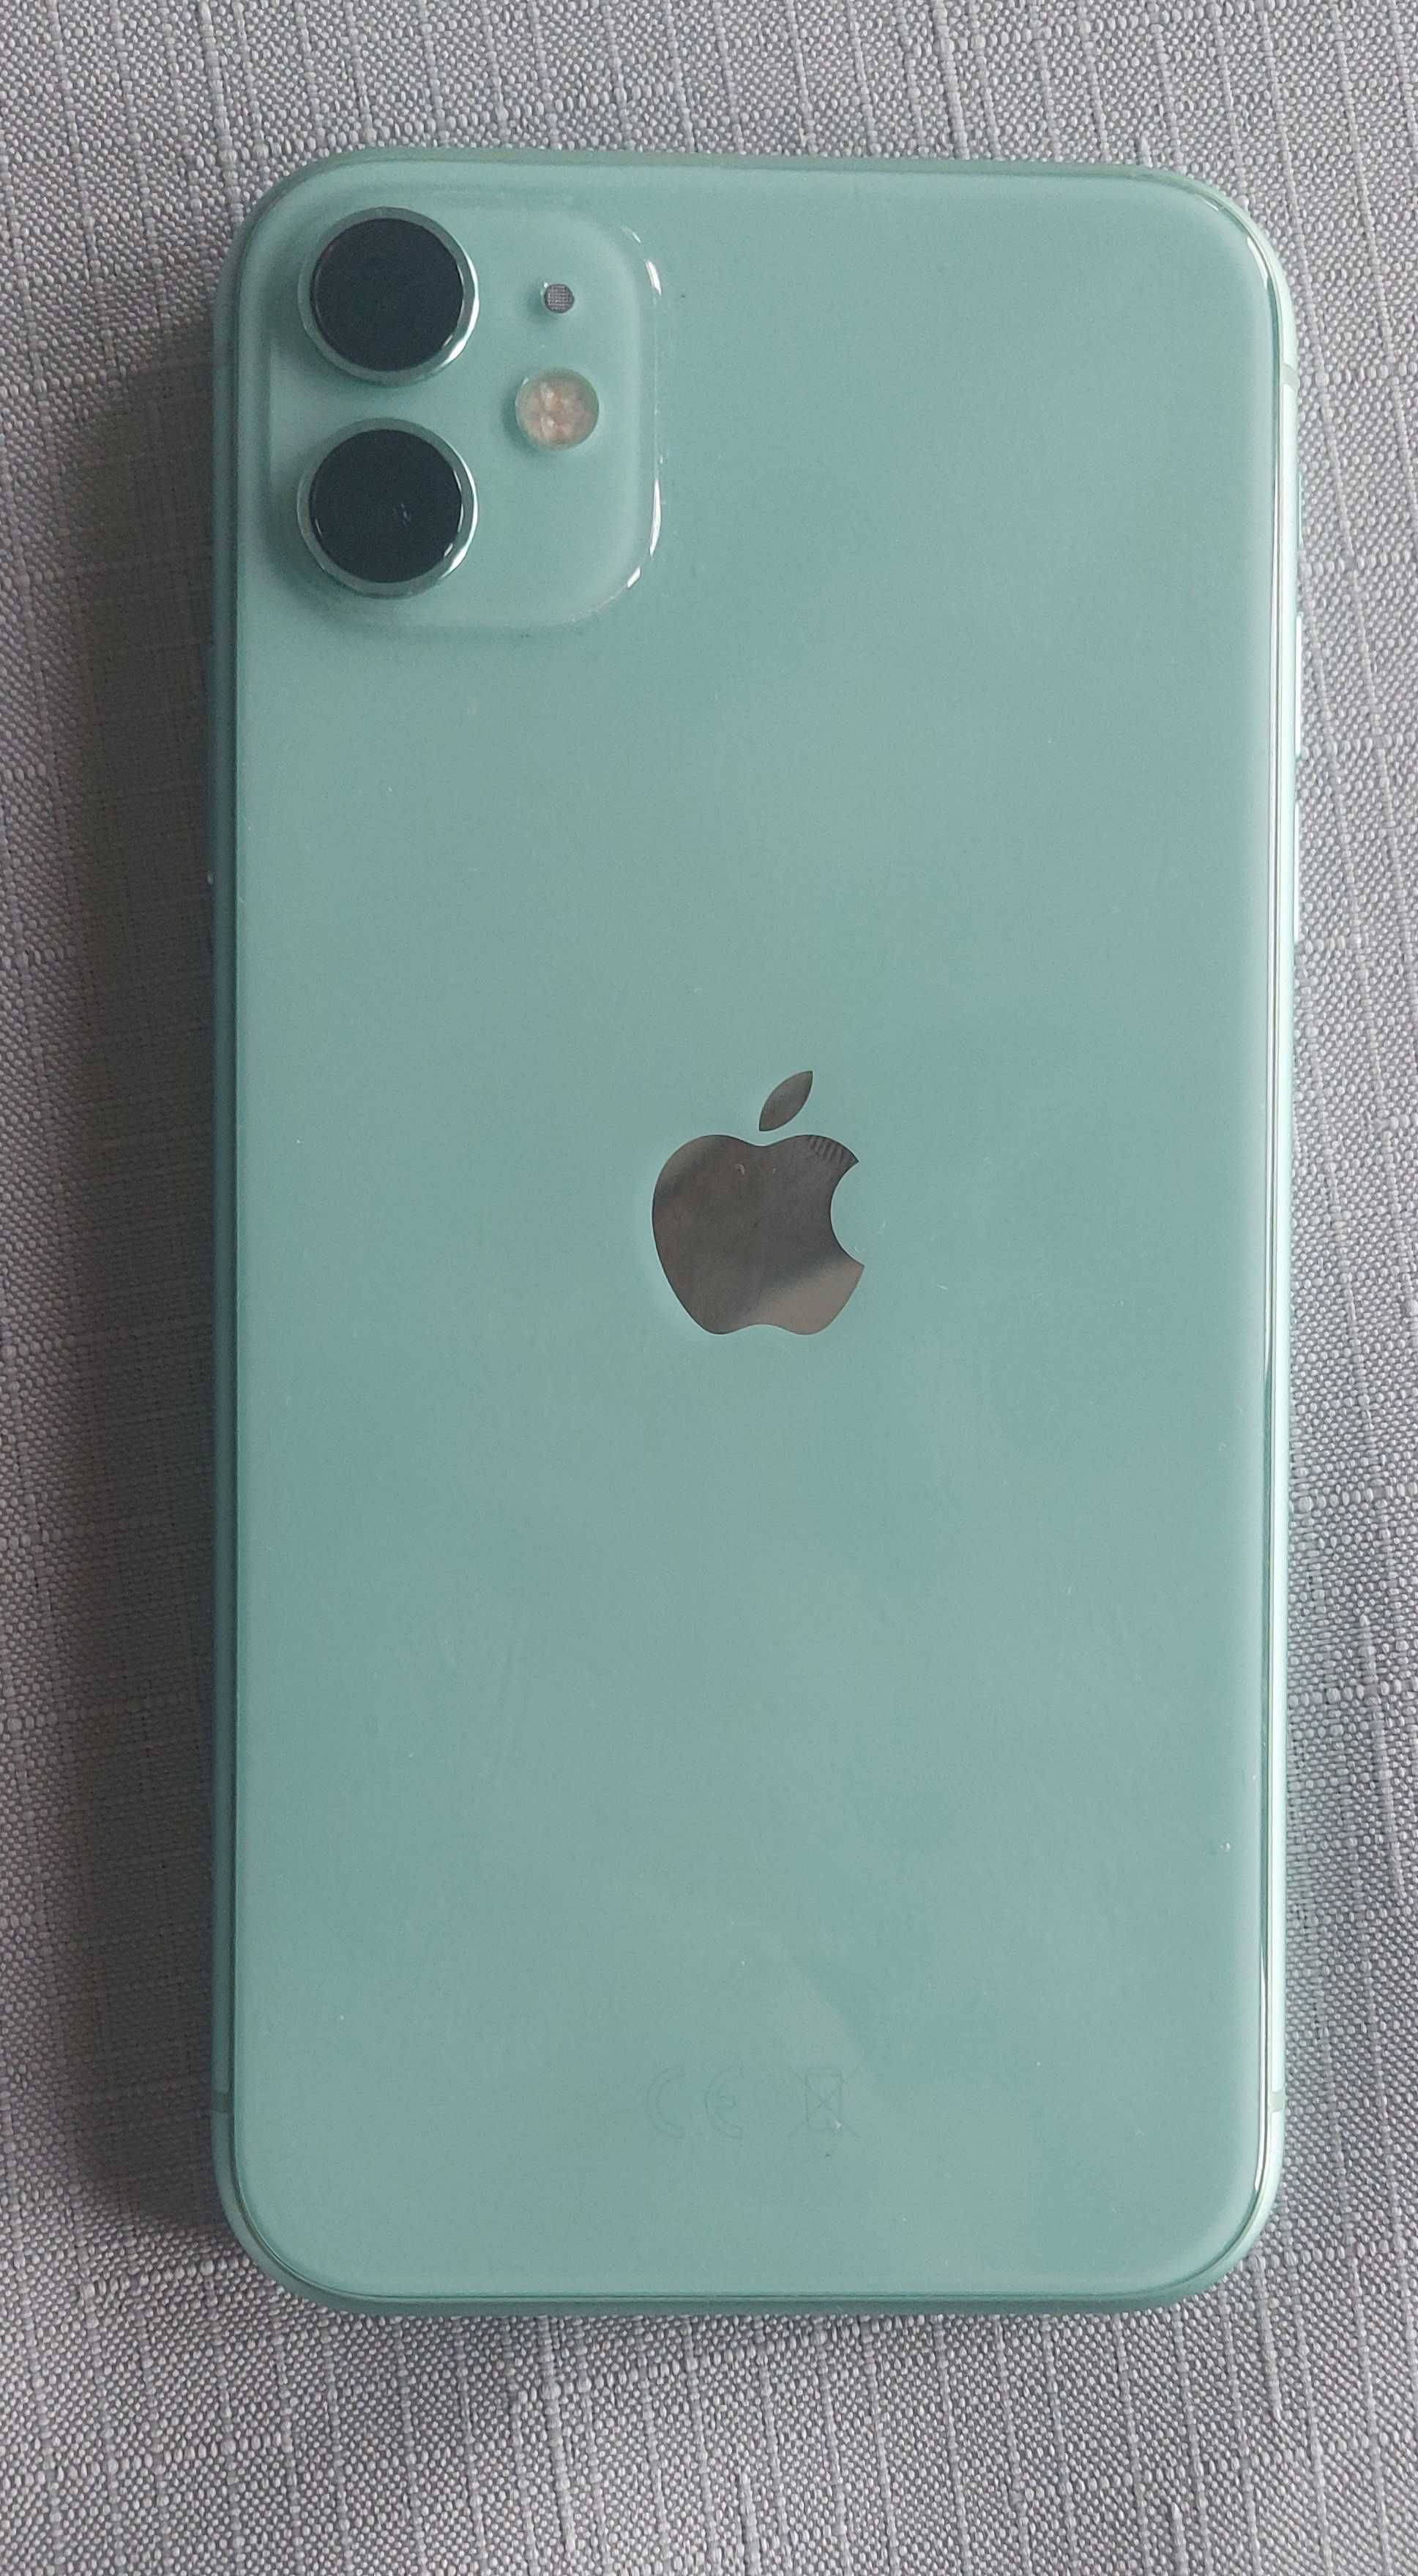 Sprzedam iPhone 11 128GB w kolorze zielonym